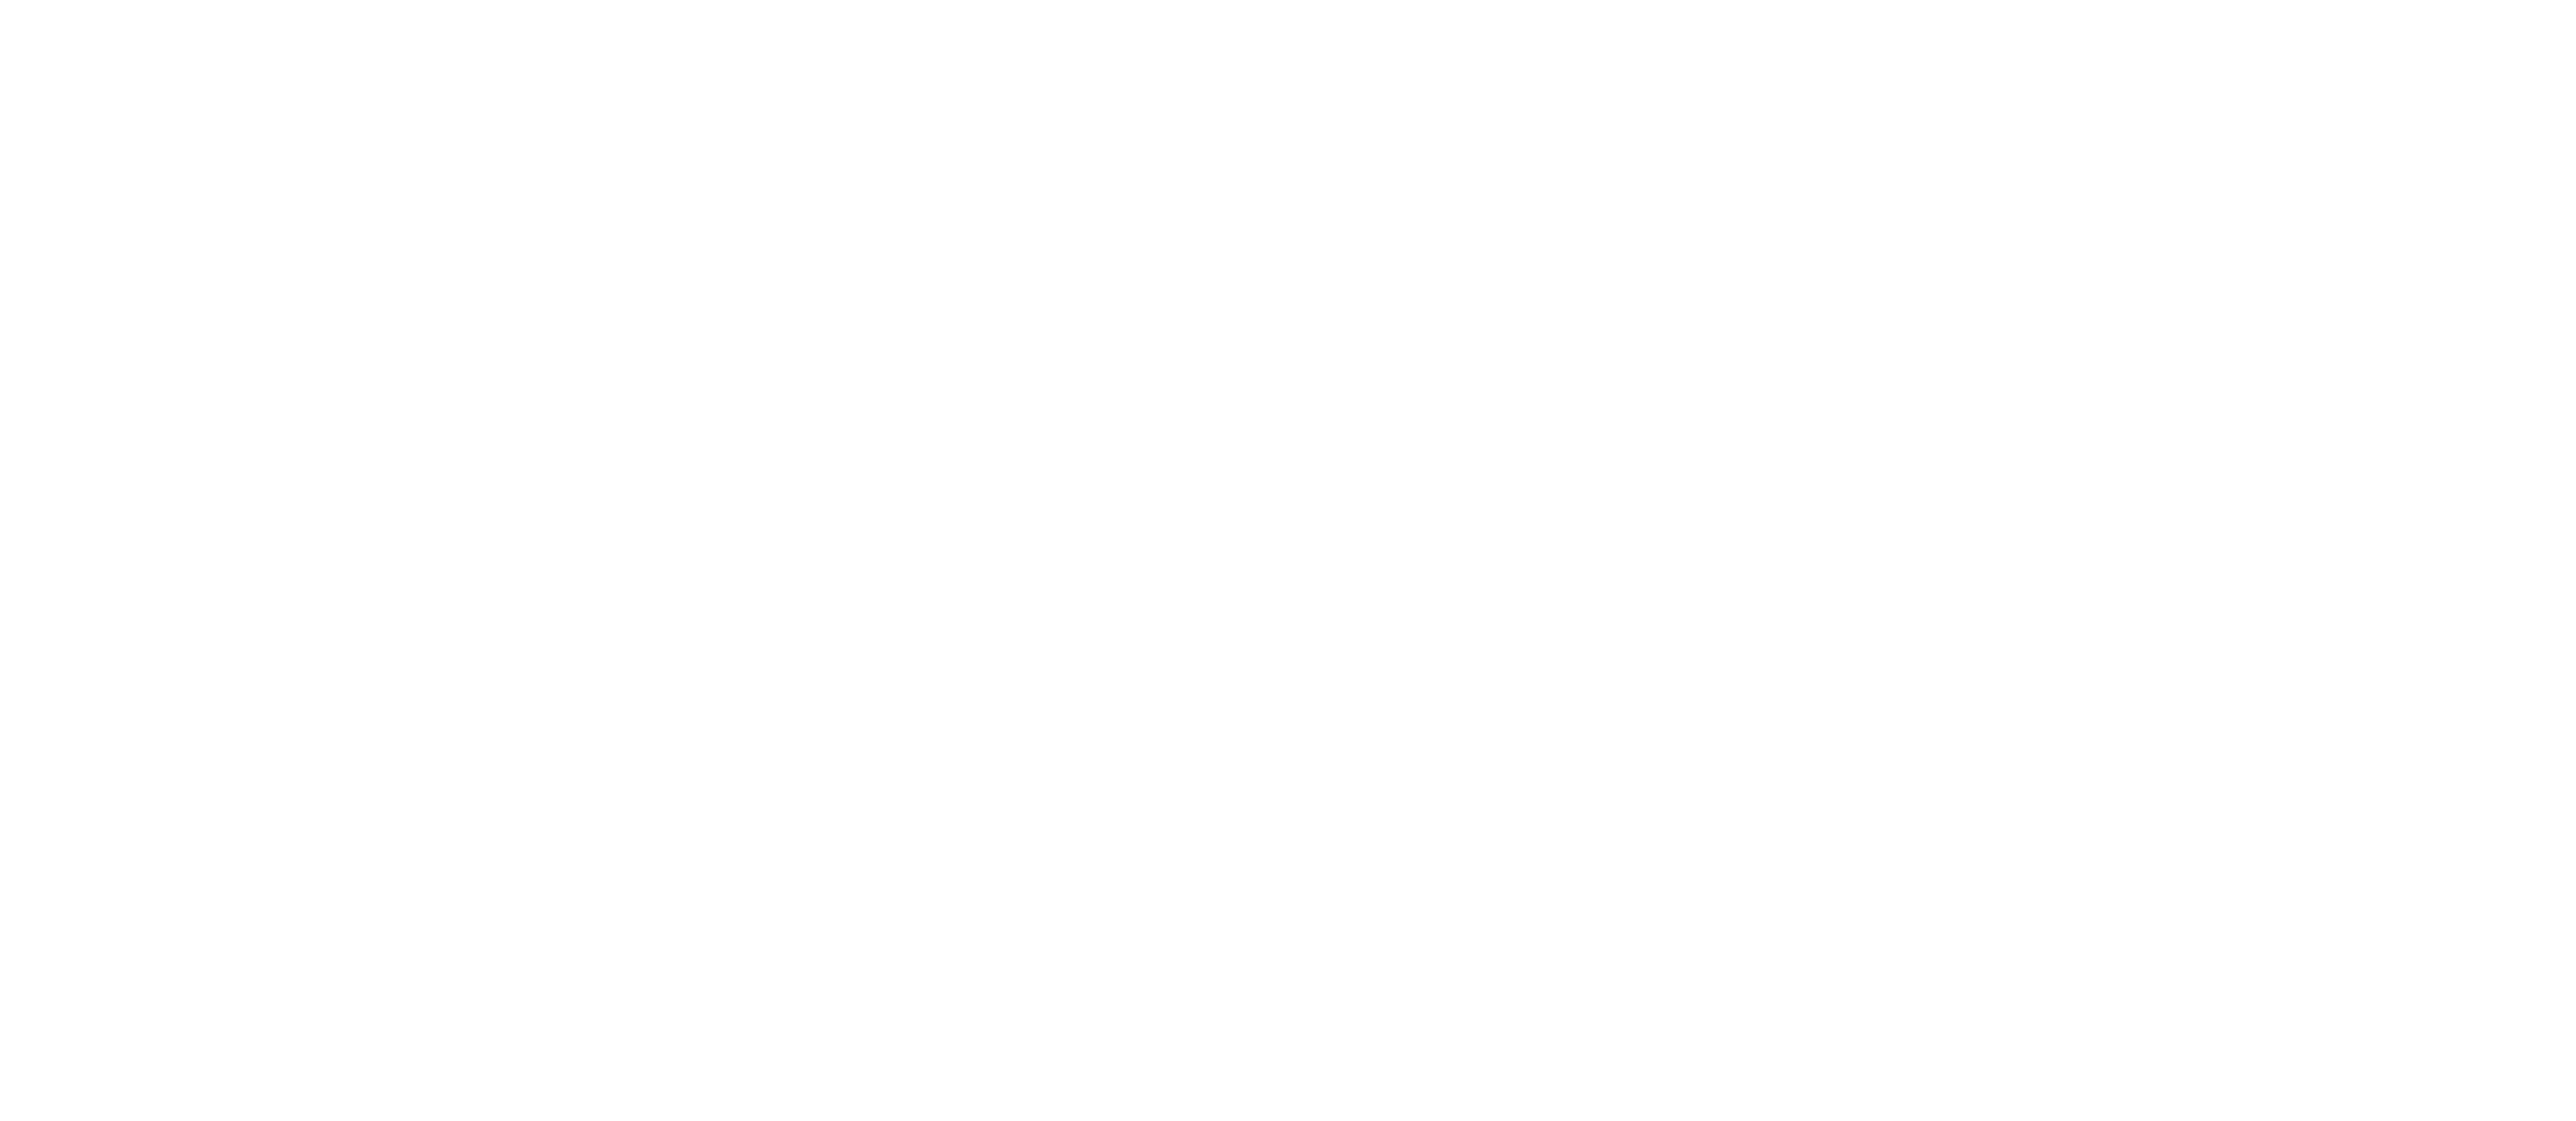 REISA logo